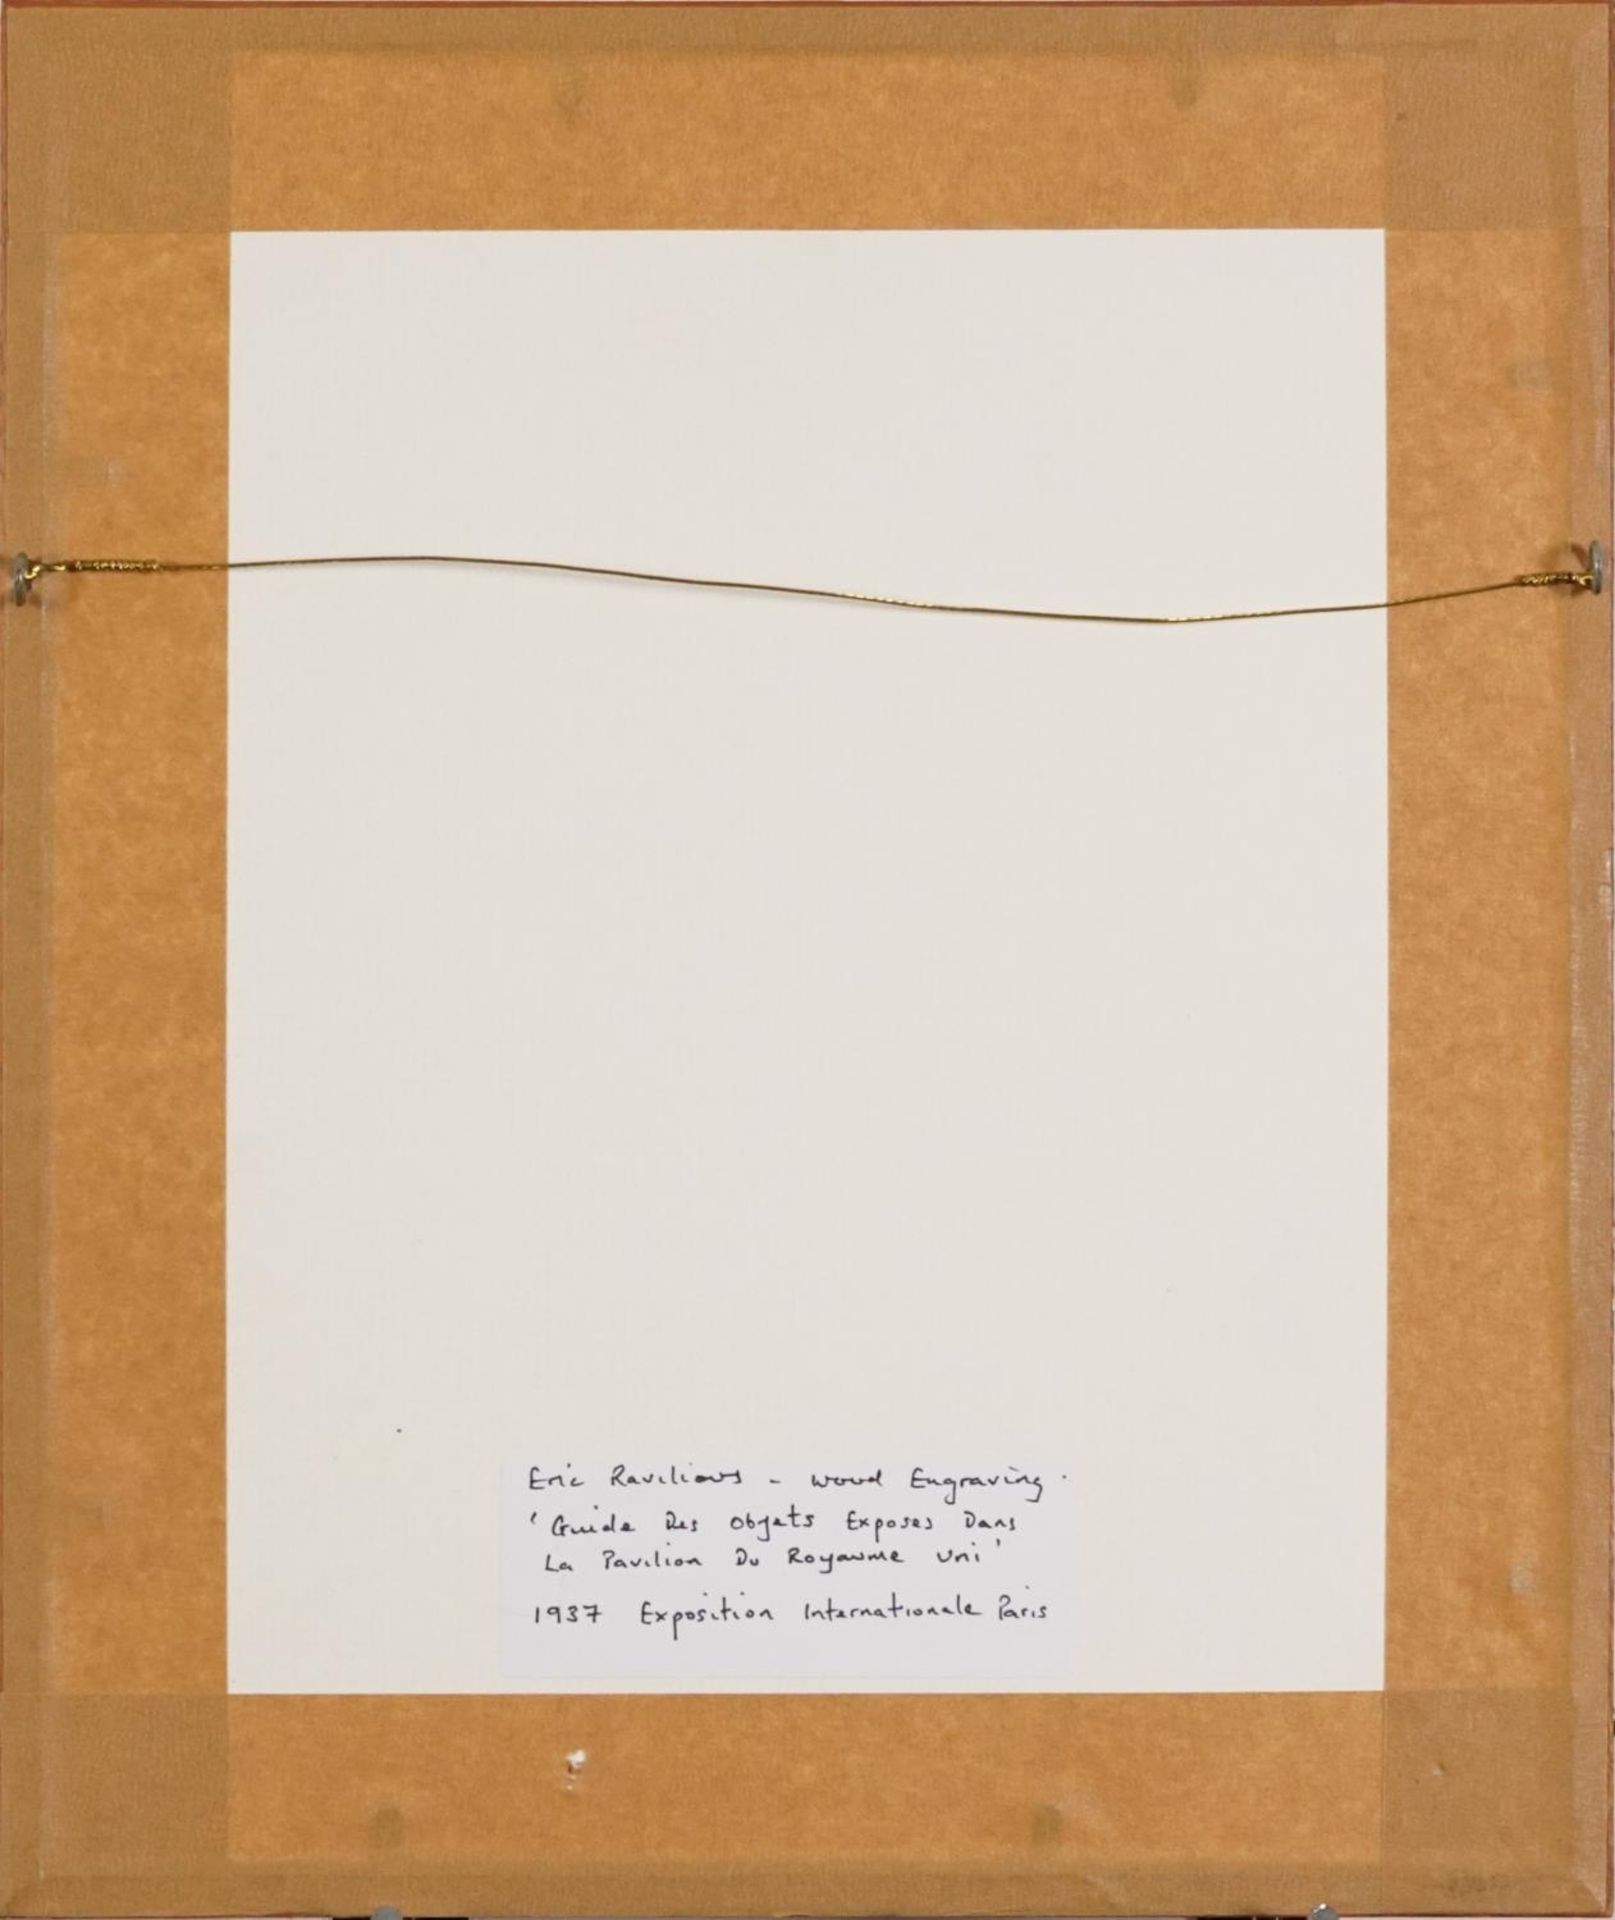 Eric Ravilious - Guide des Objects Exposes Dans la Pavillon du Royaume Uni, inscribed 1937 - Bild 3 aus 4